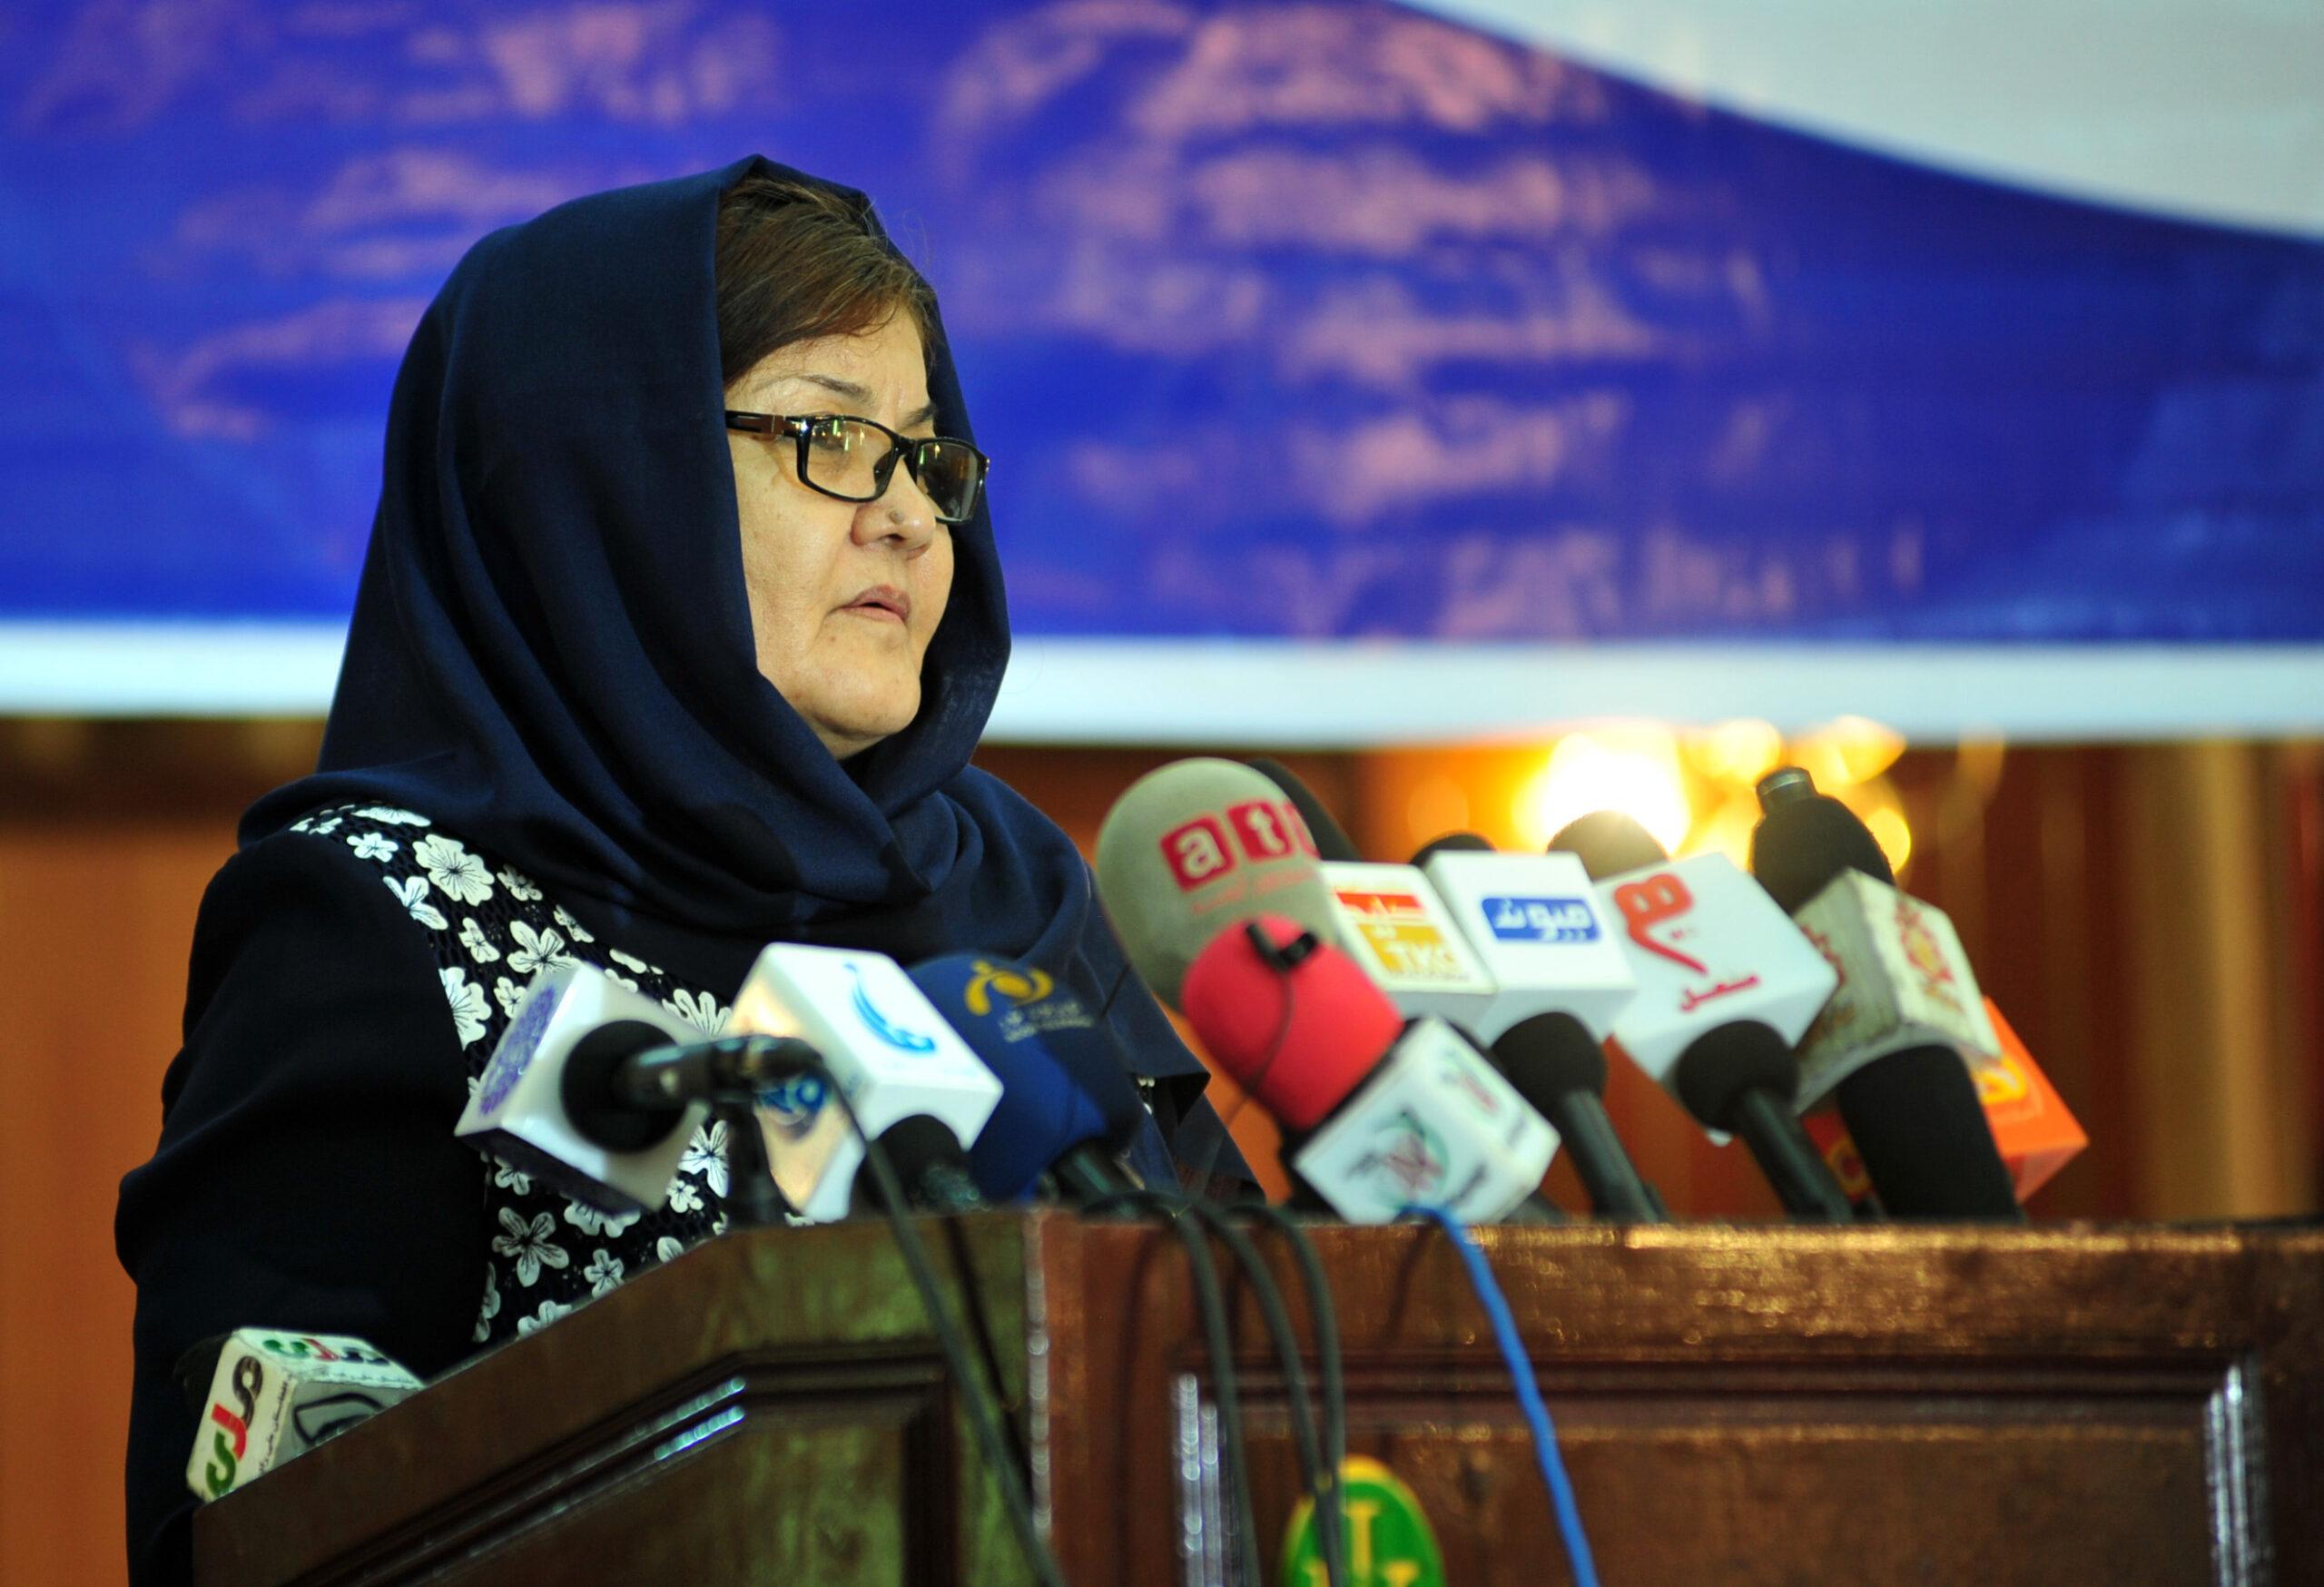 دلبر نظری وزیر امور زنان ، کابل